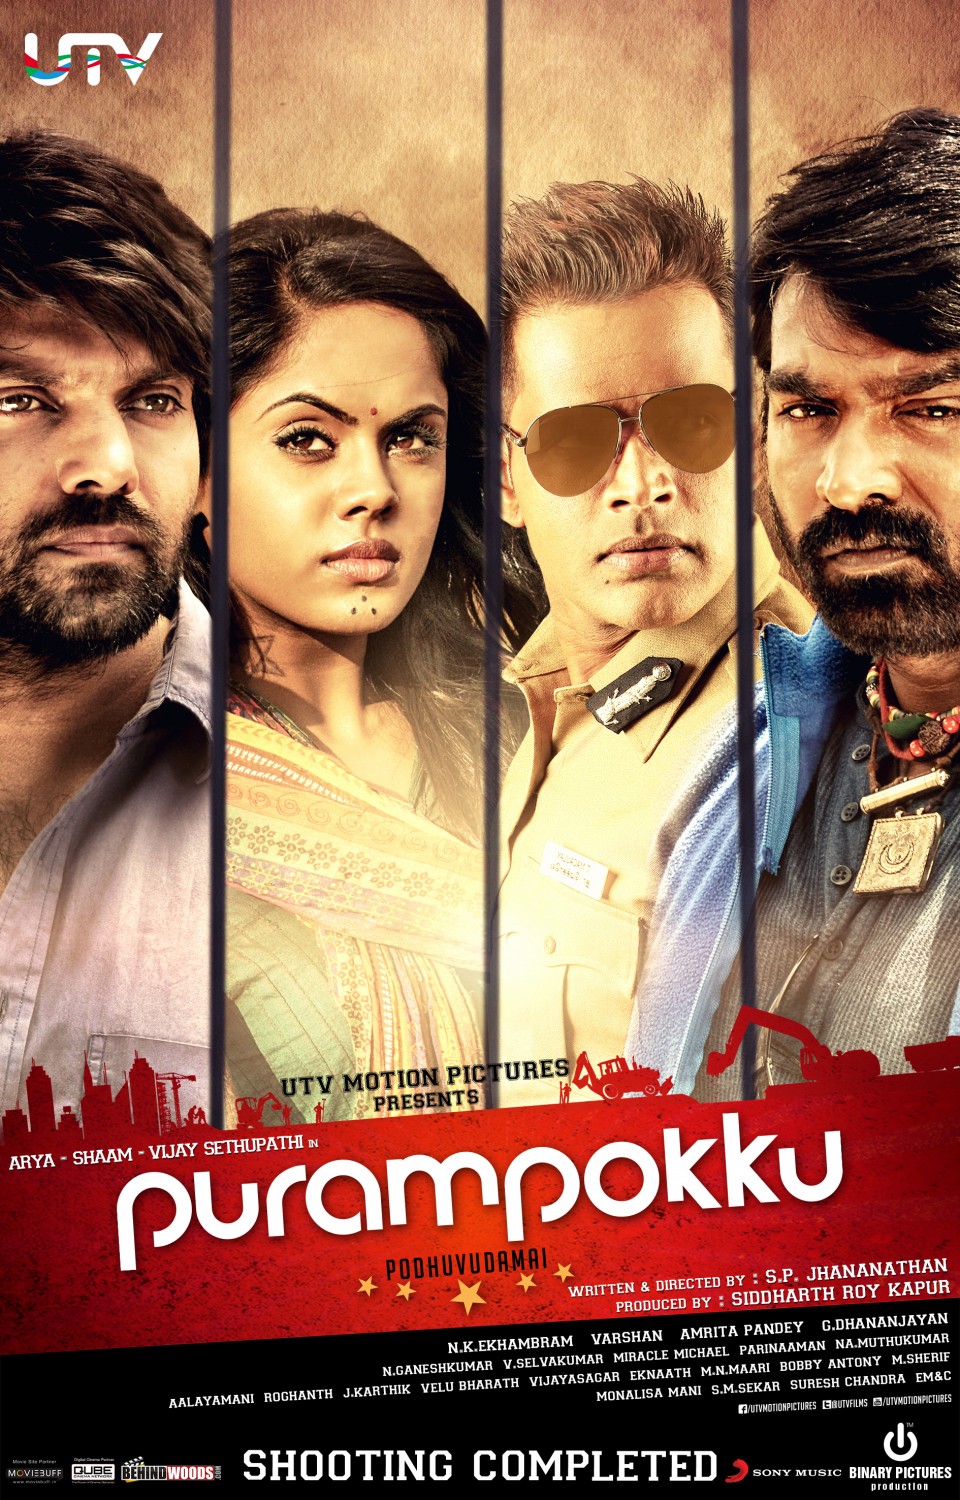 Extra Large Movie Poster Image for Purampokku Poduvudamai (#5 of 5)